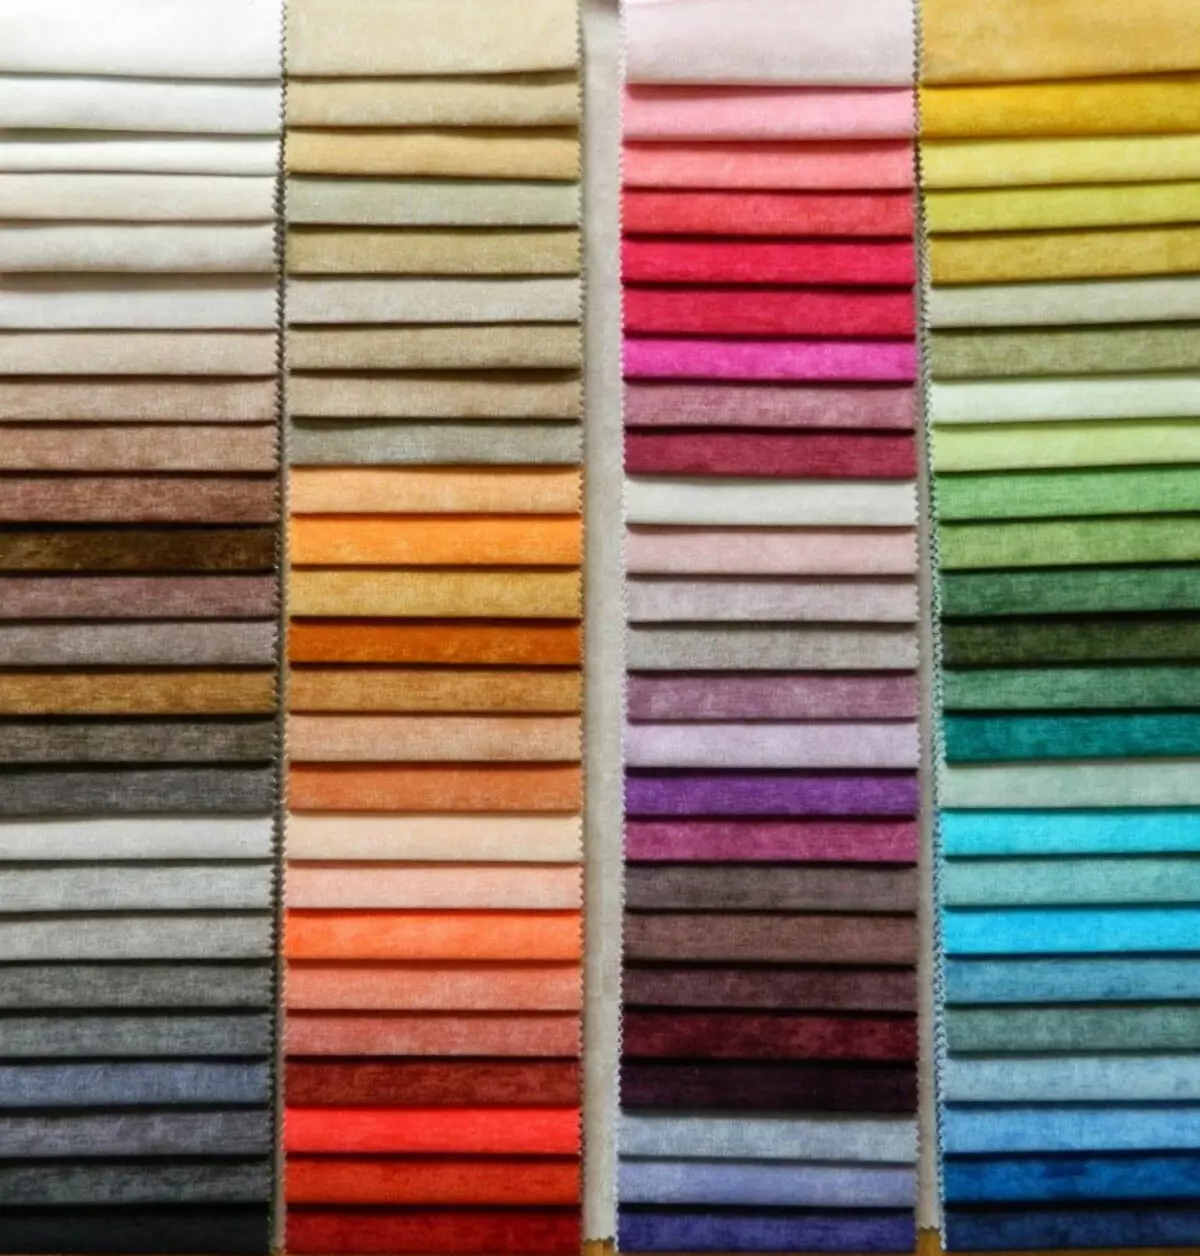 Velvet (43 ảnh): Vải này là gì? Làm thế nào để khôi phục tài liệu? Đặc điểm của hàng dệt may đồ nội thất. Thành phần và tính chất. ĐẶC ĐIỂM CỦA MIROELLS. 3993_7